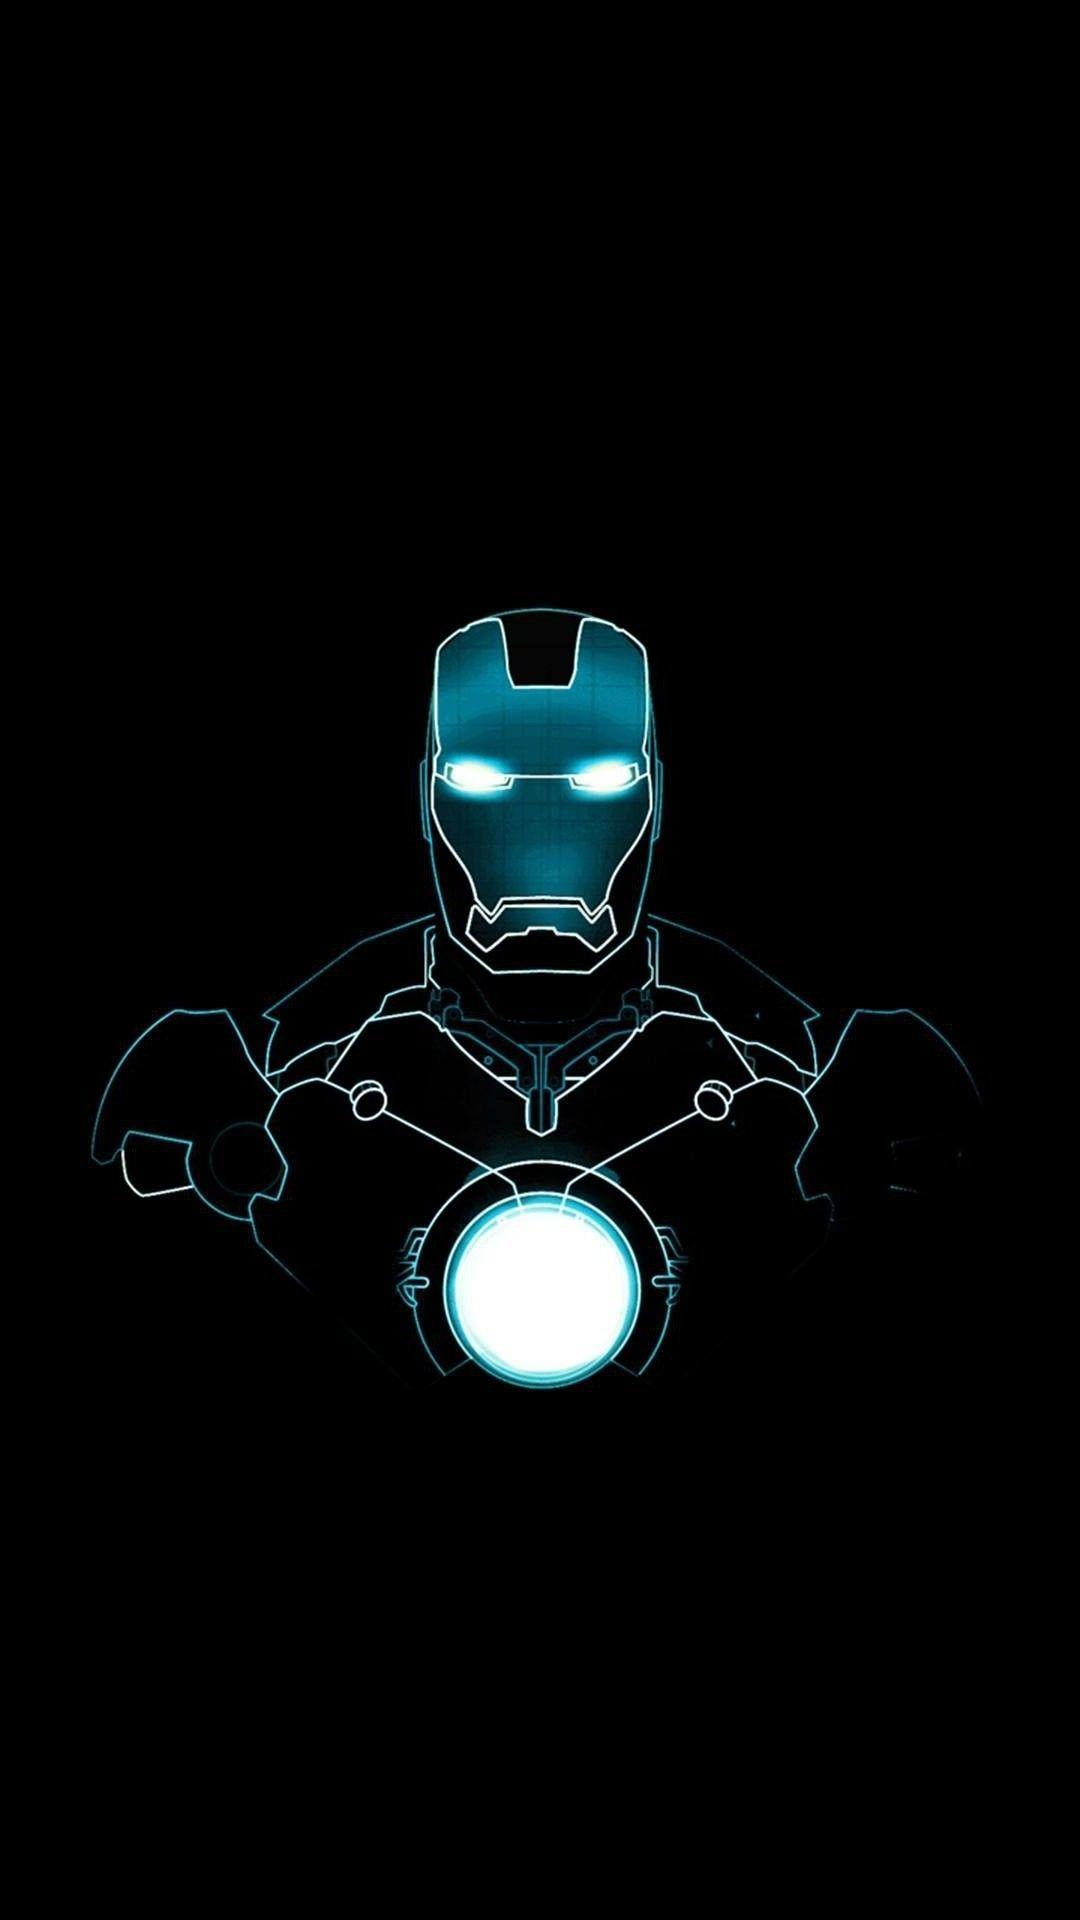 Hình nền Iron Man 4K cho iPhone - Bạn đang muốn tìm kiếm một hình nền độc đáo và sáng tạo cho điện thoại của mình? Hãy khám phá bộ sưu tập hình nền Iron Man 4K cho iPhone với chất lượng hình ảnh tuyệt đẹp và đầy hấp dẫn. Hãy cùng cài đặt và tận hưởng vẻ đẹp của nhân vật người sắt trên màn hình điện thoại của bạn.